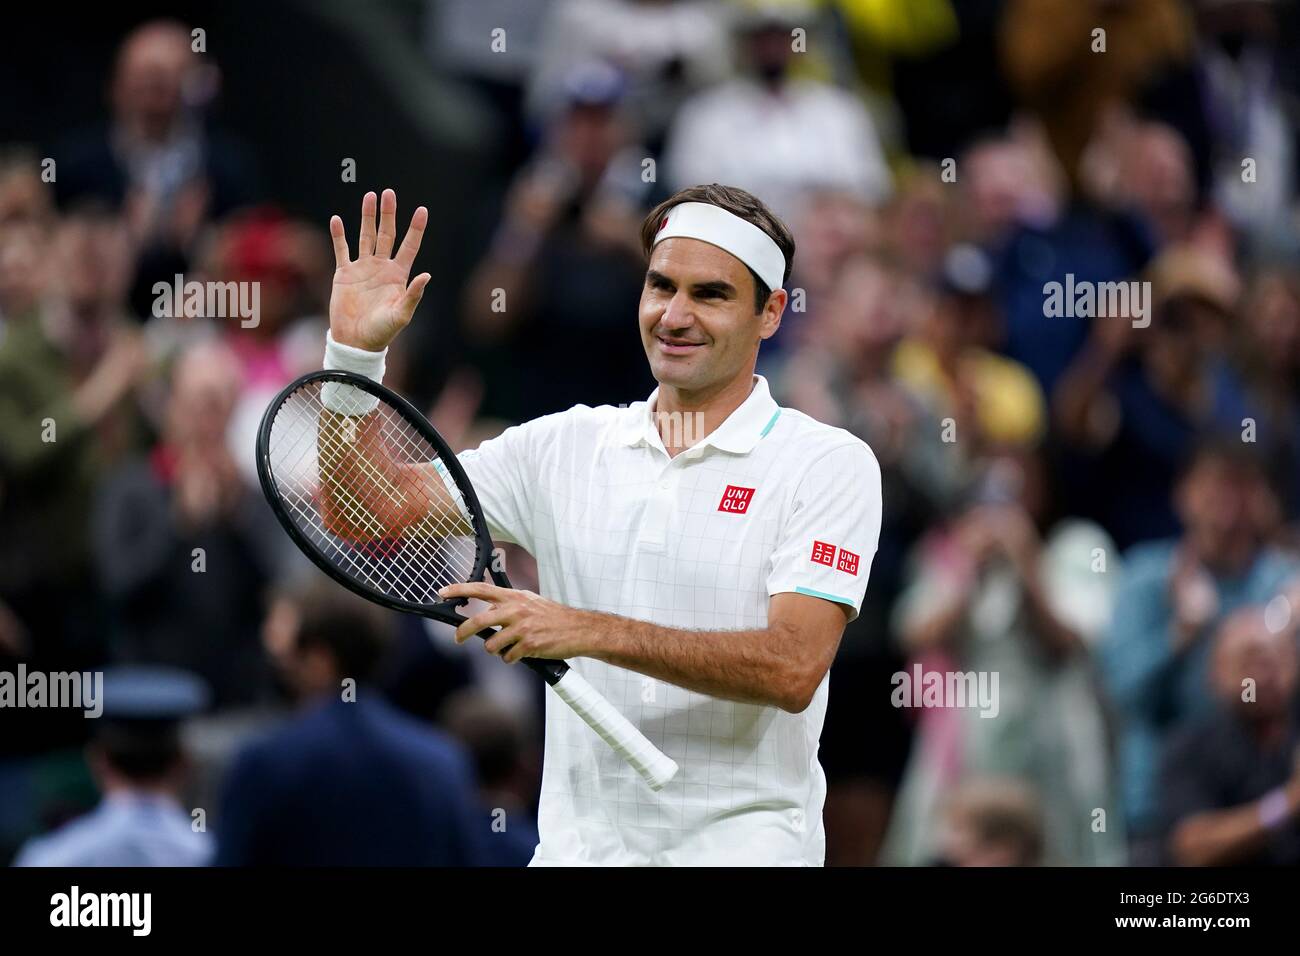 Roger Federer celebra su victoria contra Lorenzo Sonego en la pista central el séptimo día de Wimbledon en el All England Lawn Tennis and Croquet Club, Wimbledon. Fecha de la foto: Lunes 5 de julio de 2021. Foto de stock